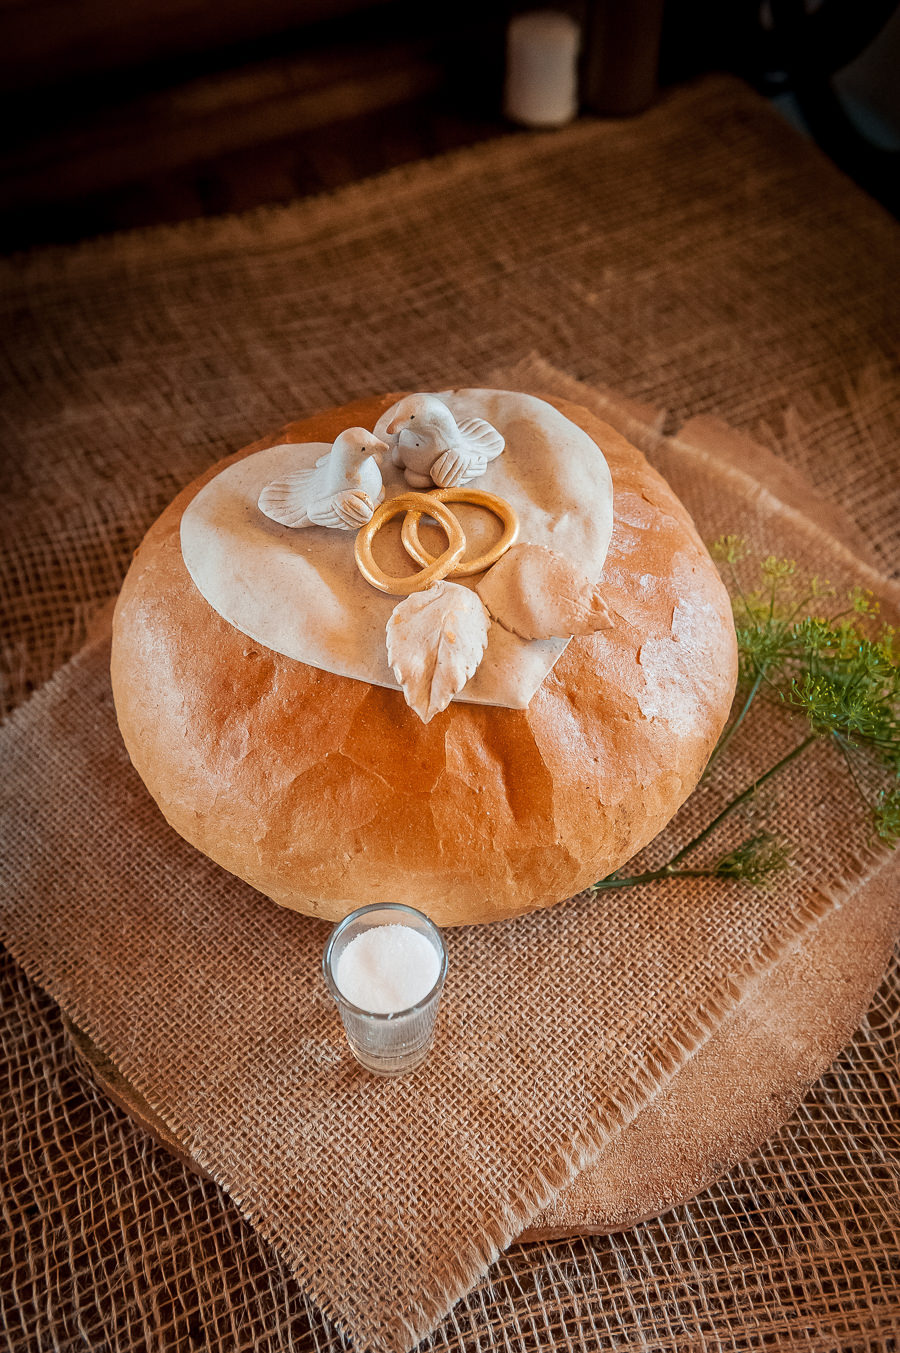 bochenek chleba i sól oczekująca na powitanie nowożeńców